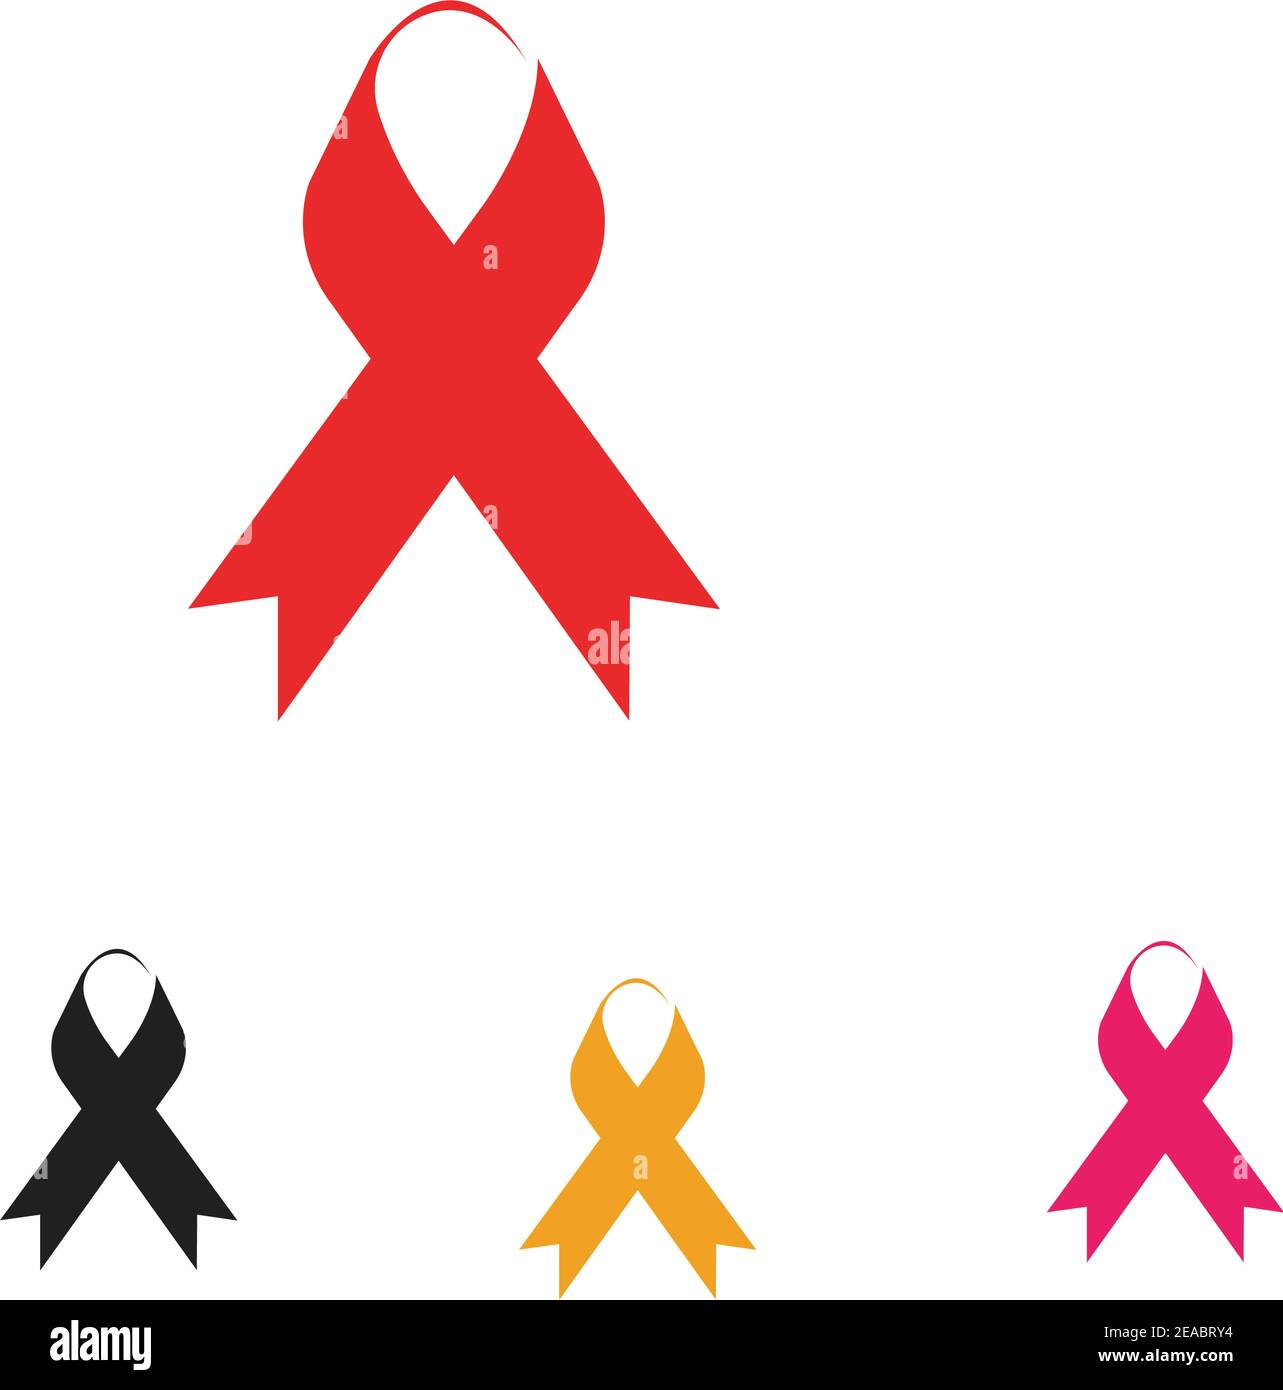 Lazo rojo, símbolo universal de la lucha contra el VIH